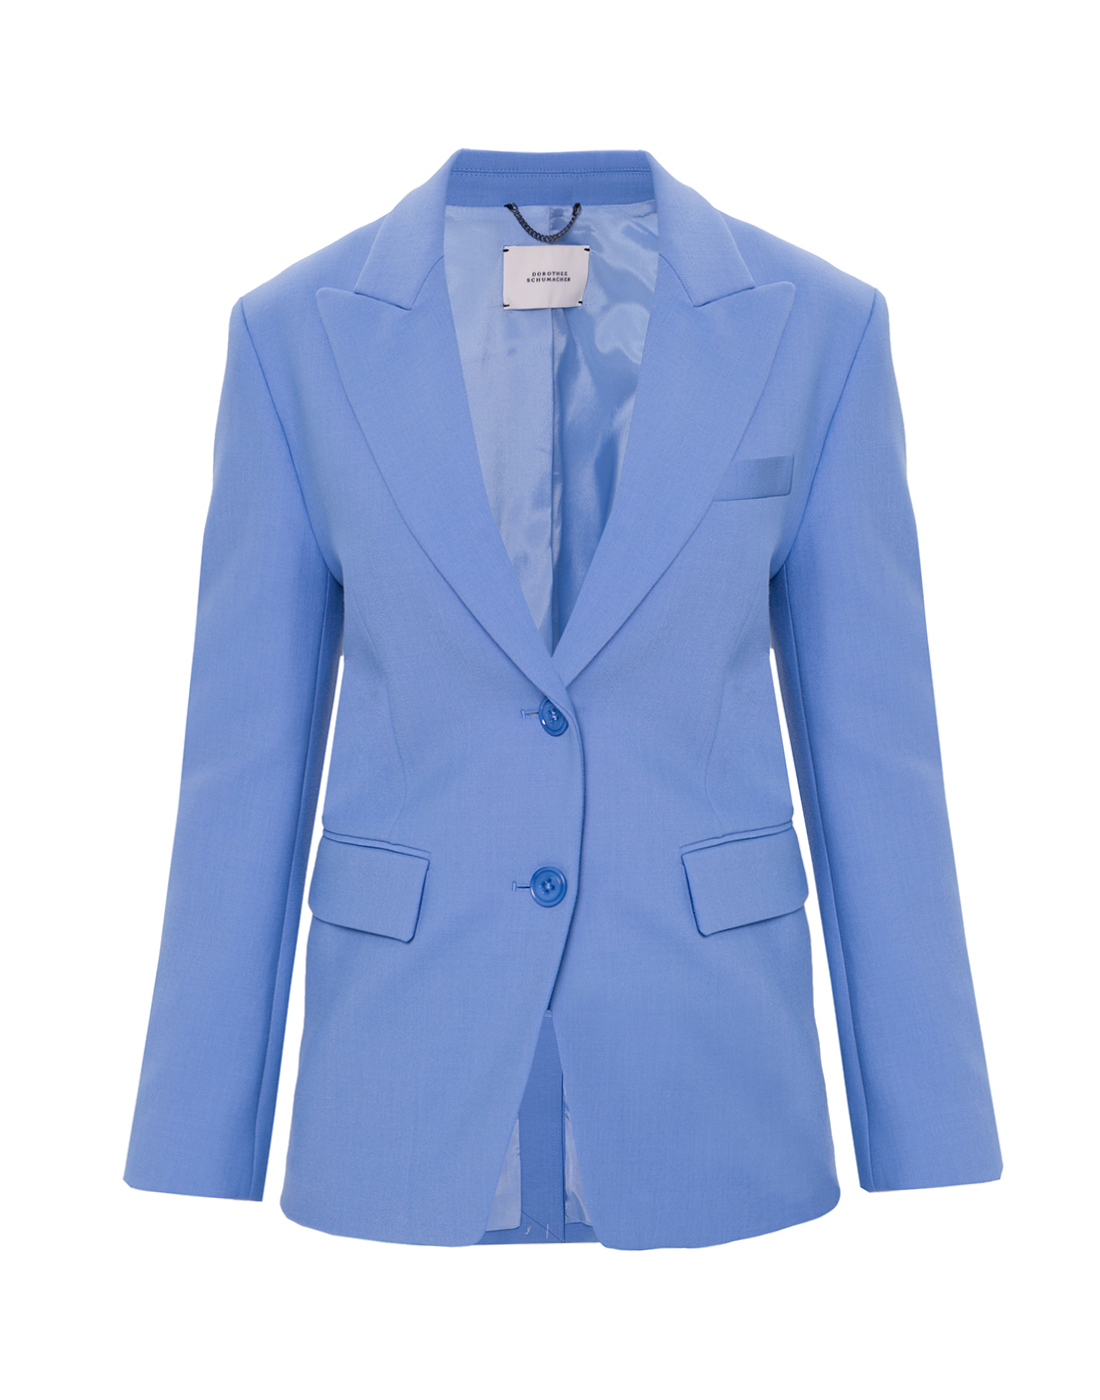 Пиджак голубой женский Dorothee Schumacher S441112/857-1